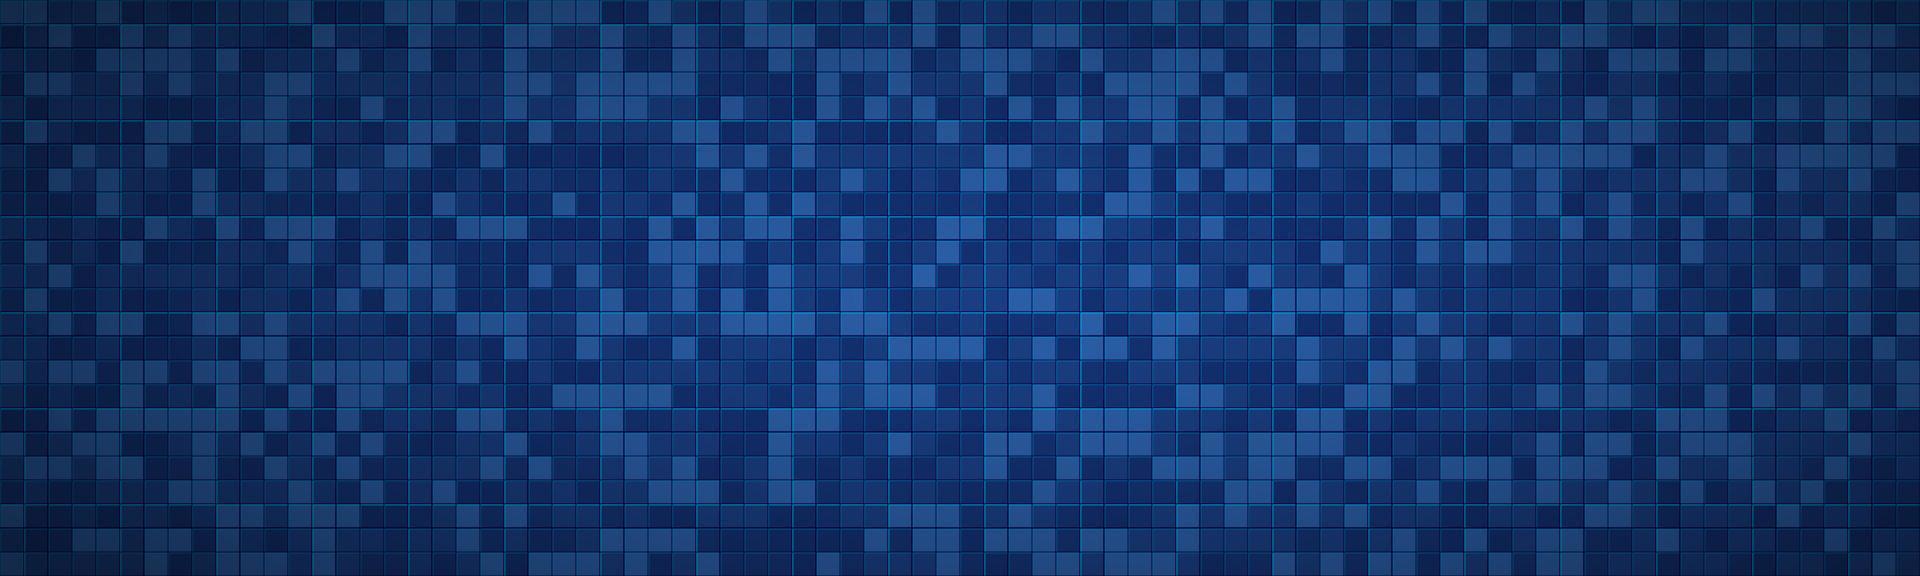 encabezado cuadrado abstracto geométrico. Bandera de textura de vector moderno de aspecto de mosaico azul. patrón de píxeles. fondo de ilustración metálica simple